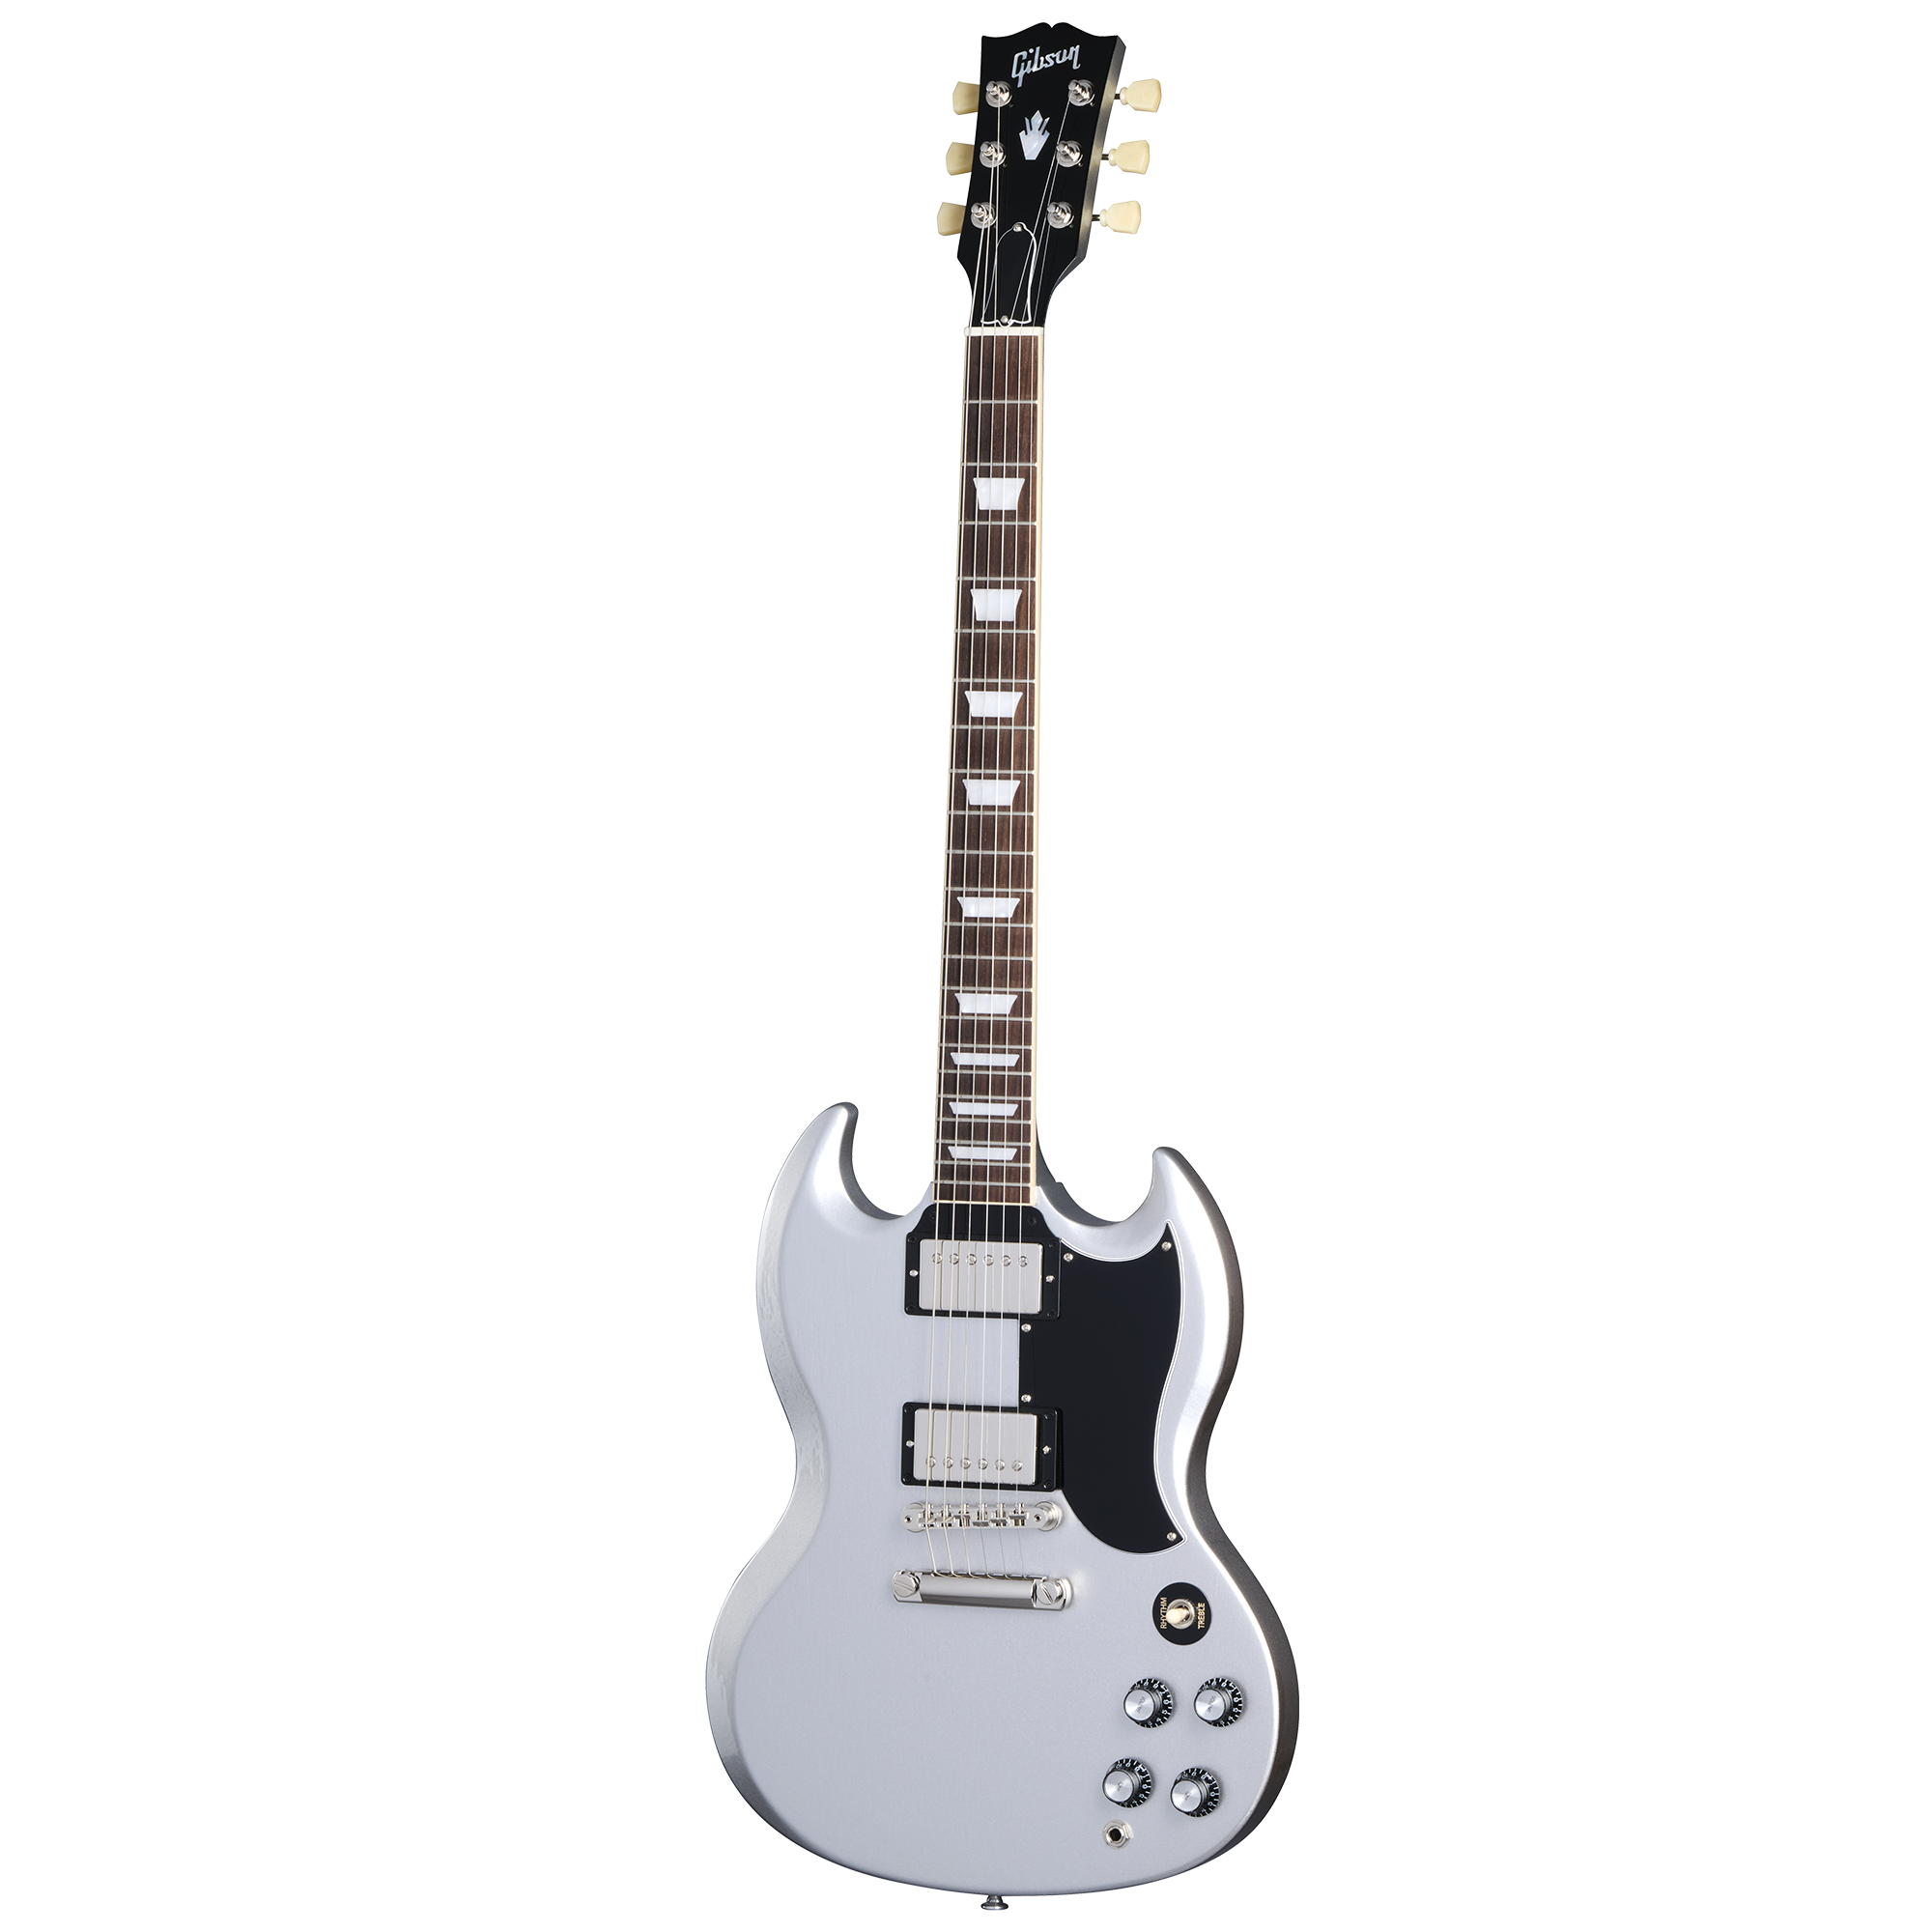 SG Standard ‘61 | Gibson